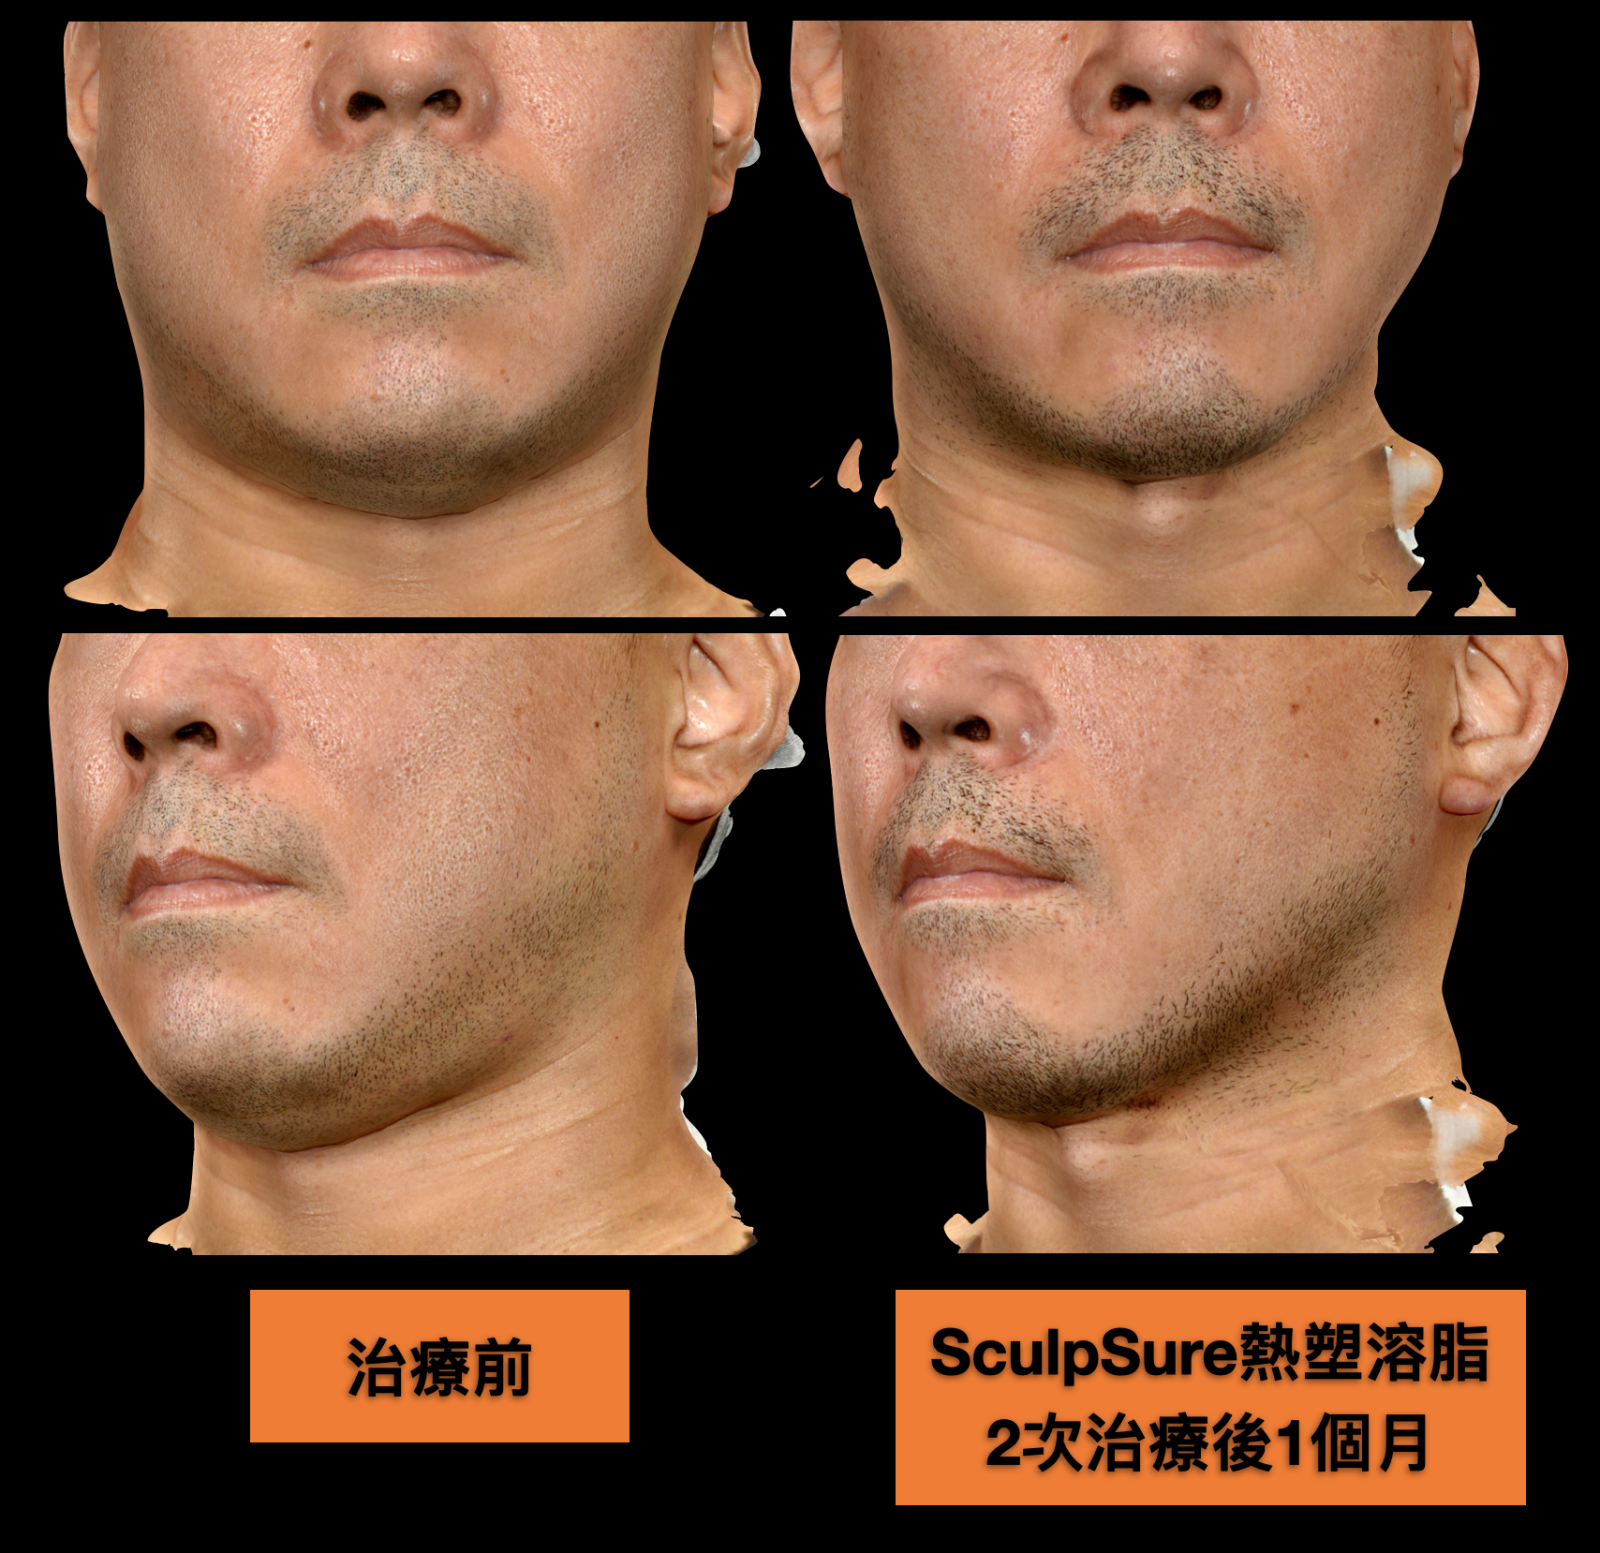 接受2~3次的SculpSure熱塑溶脂，不只從側面觀察雙下巴減脂效果明顯、輪廓線恢復俐落，正面看起來臉型也變瘦、變Ｖ